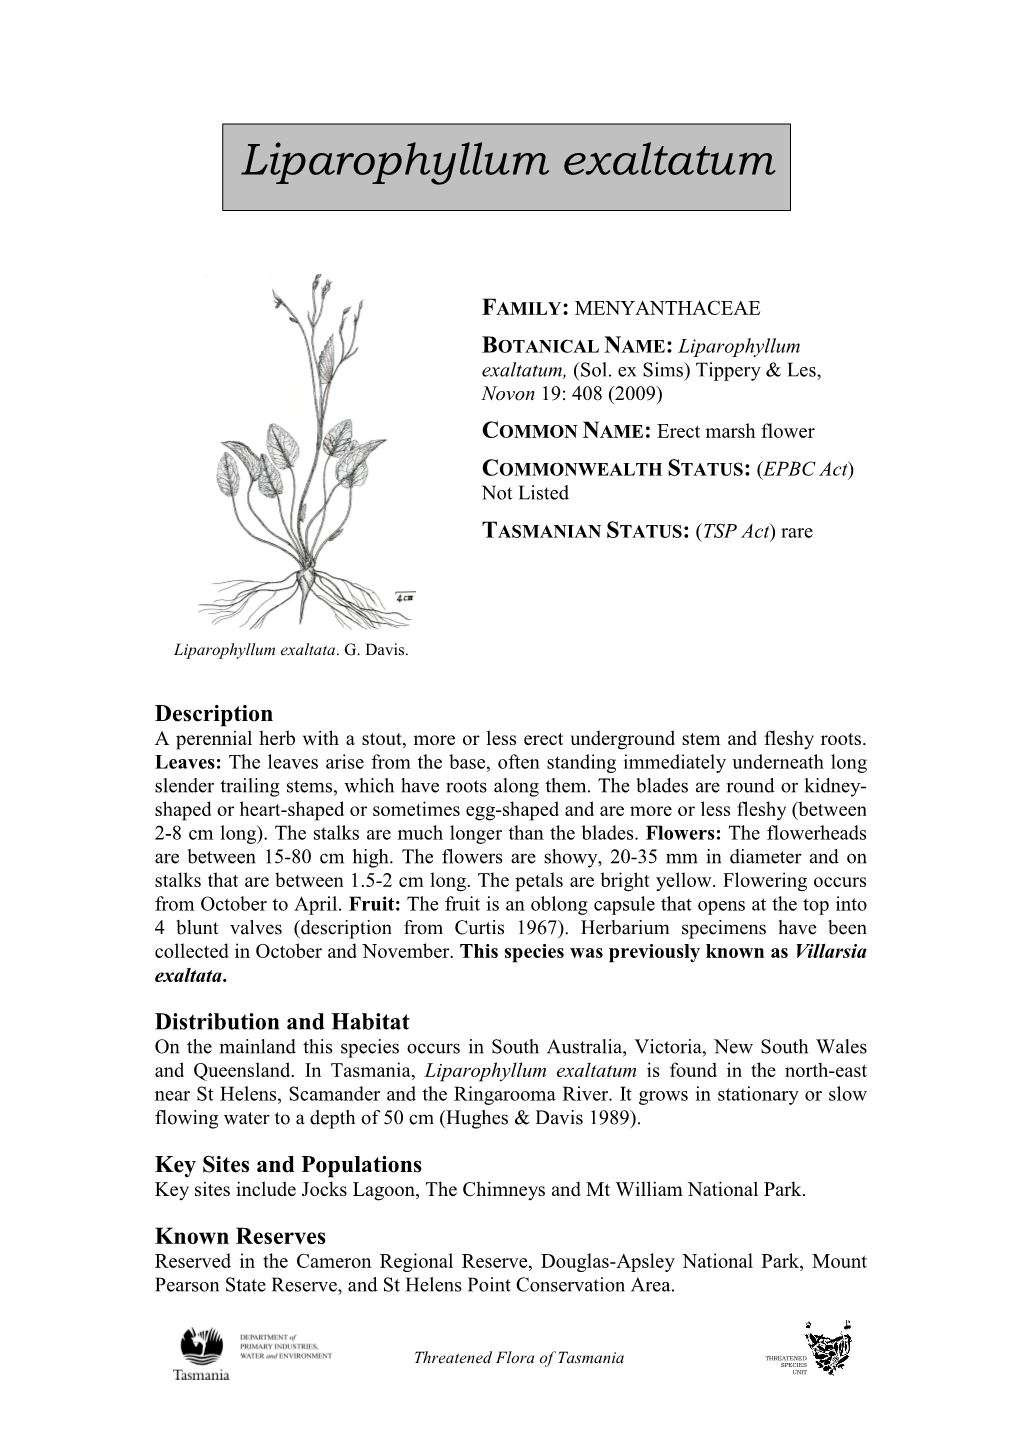 Liparophyllum Exaltatum